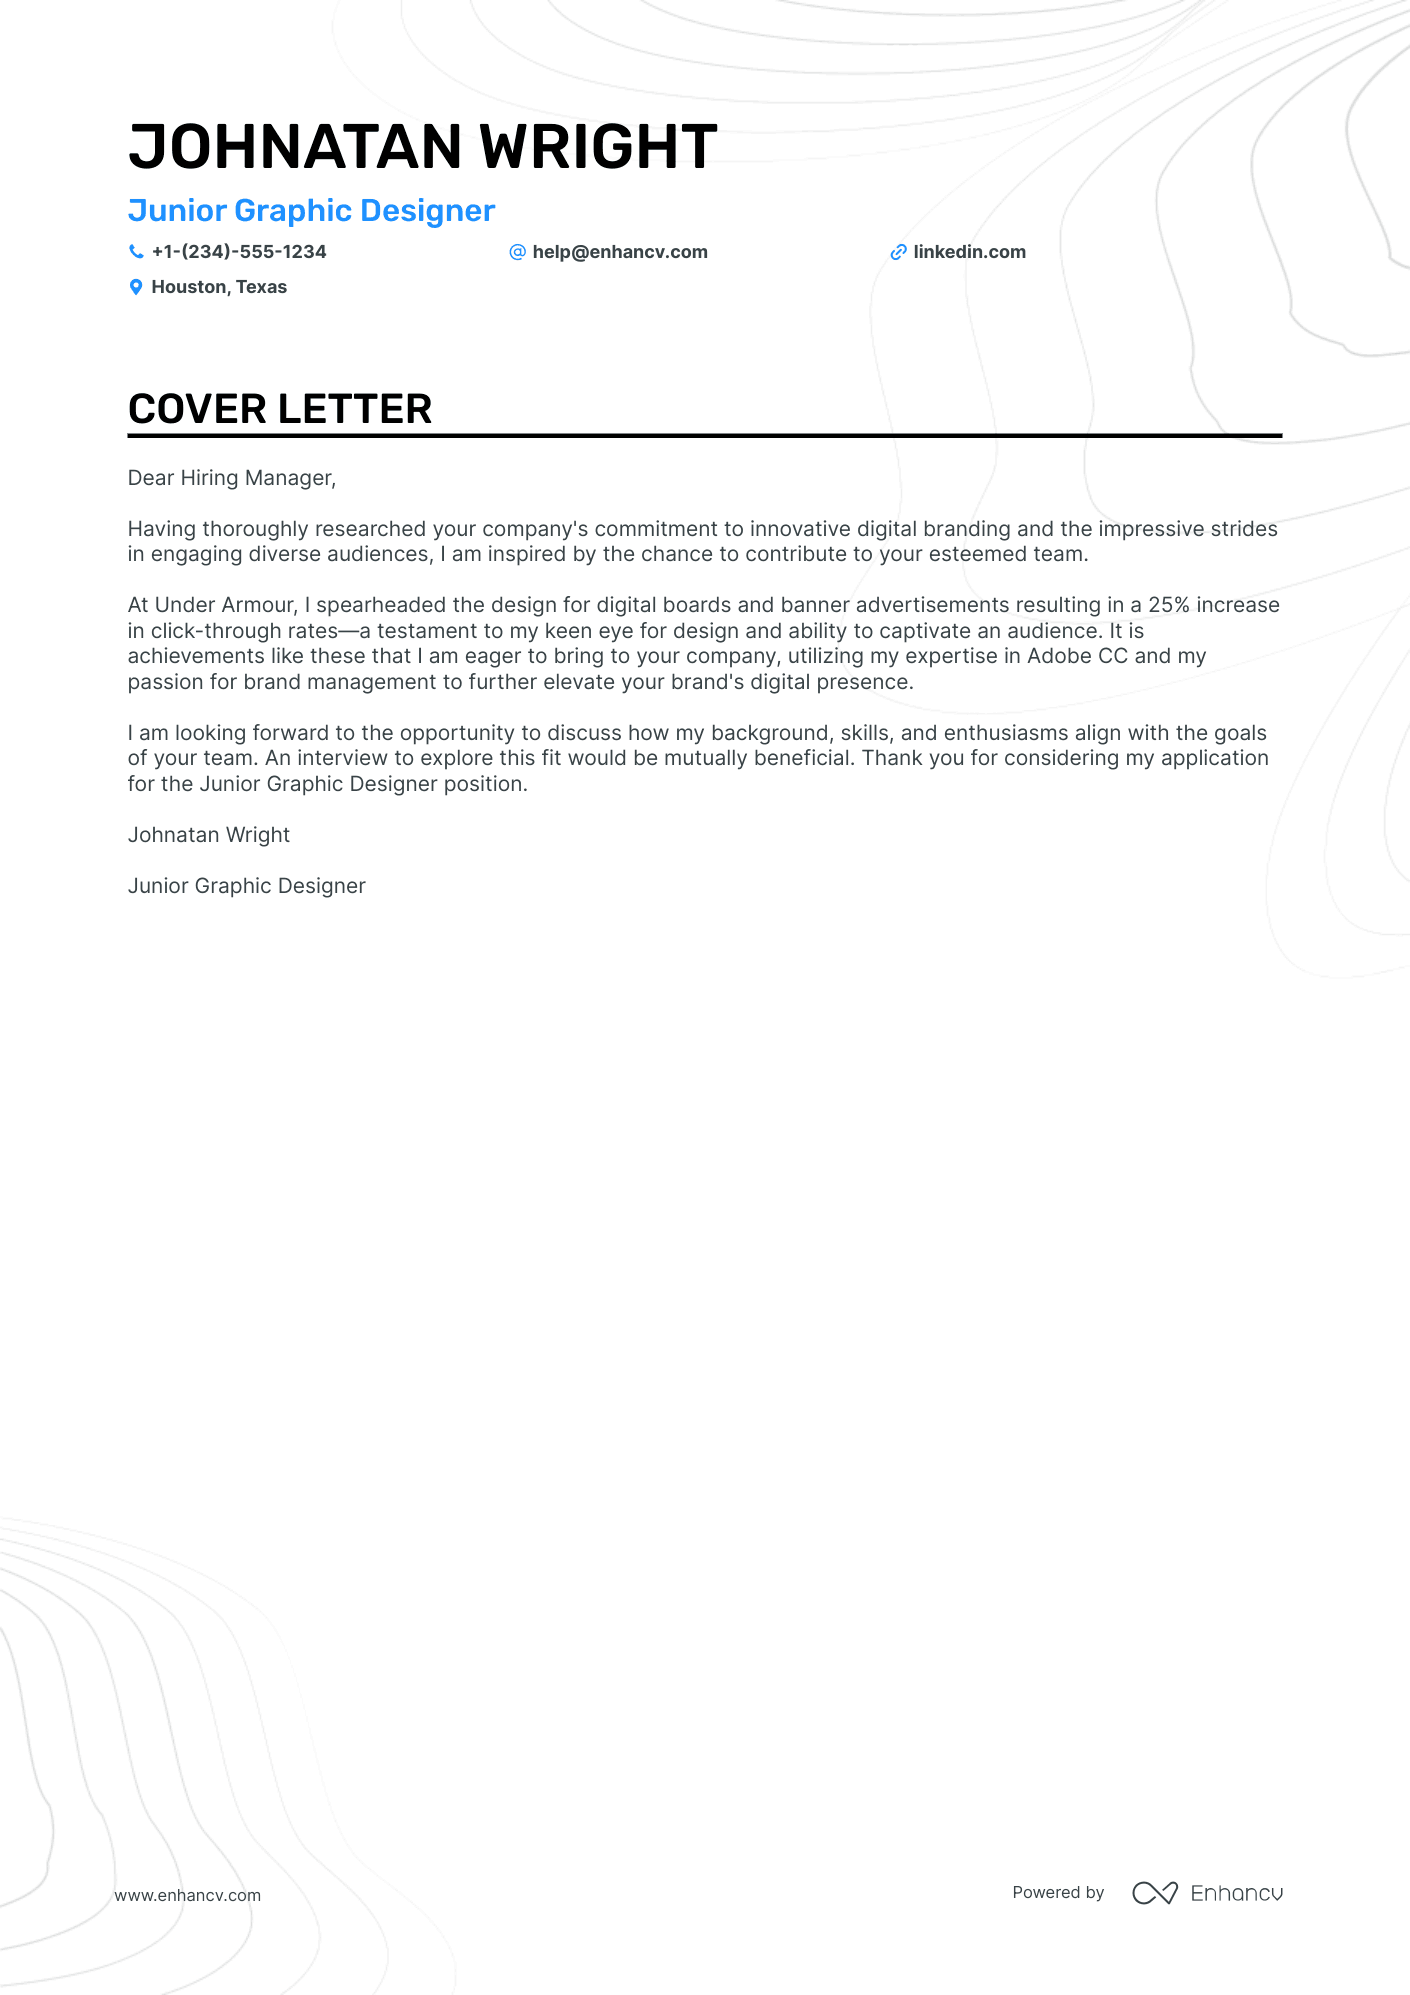 Junior Graphic Designer cover letter